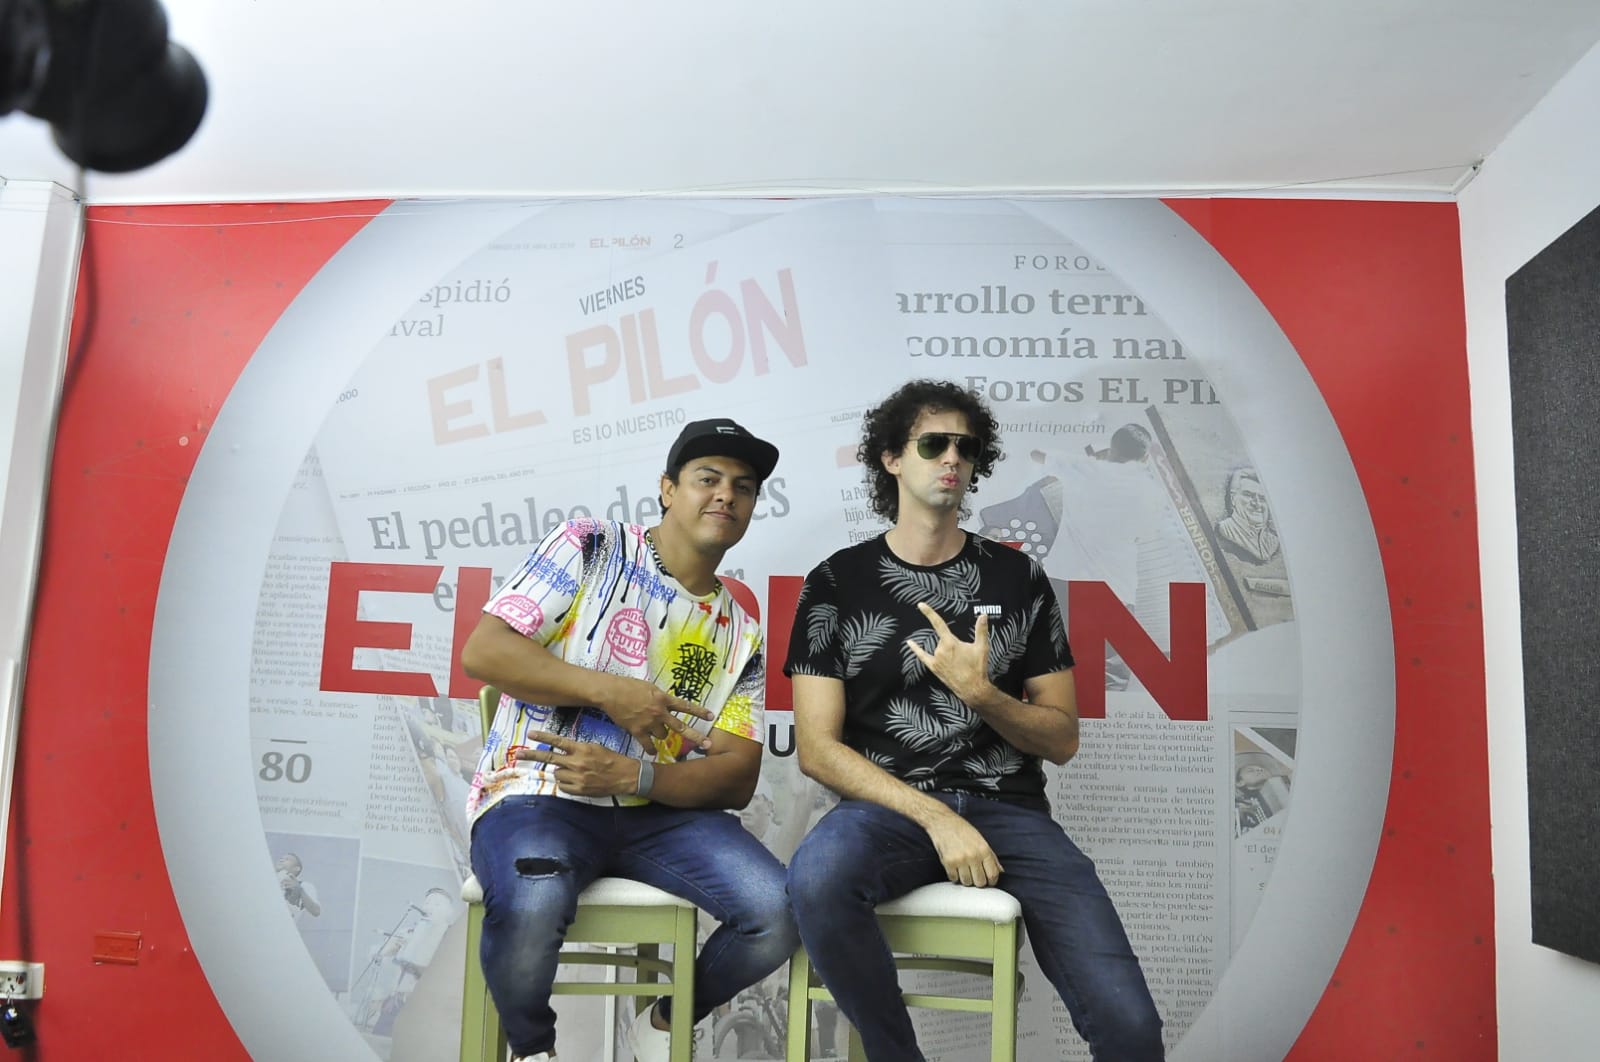 ANDY Y JANIO (camisa negra) son los líderes de la banda de rock Sintendencias, que nació en Valledupar y busca conquistar un público diferente marcado por la caja, la guacharaca y el acordeón./ FOTO: JOAQUÍN RAMÍREZ.
